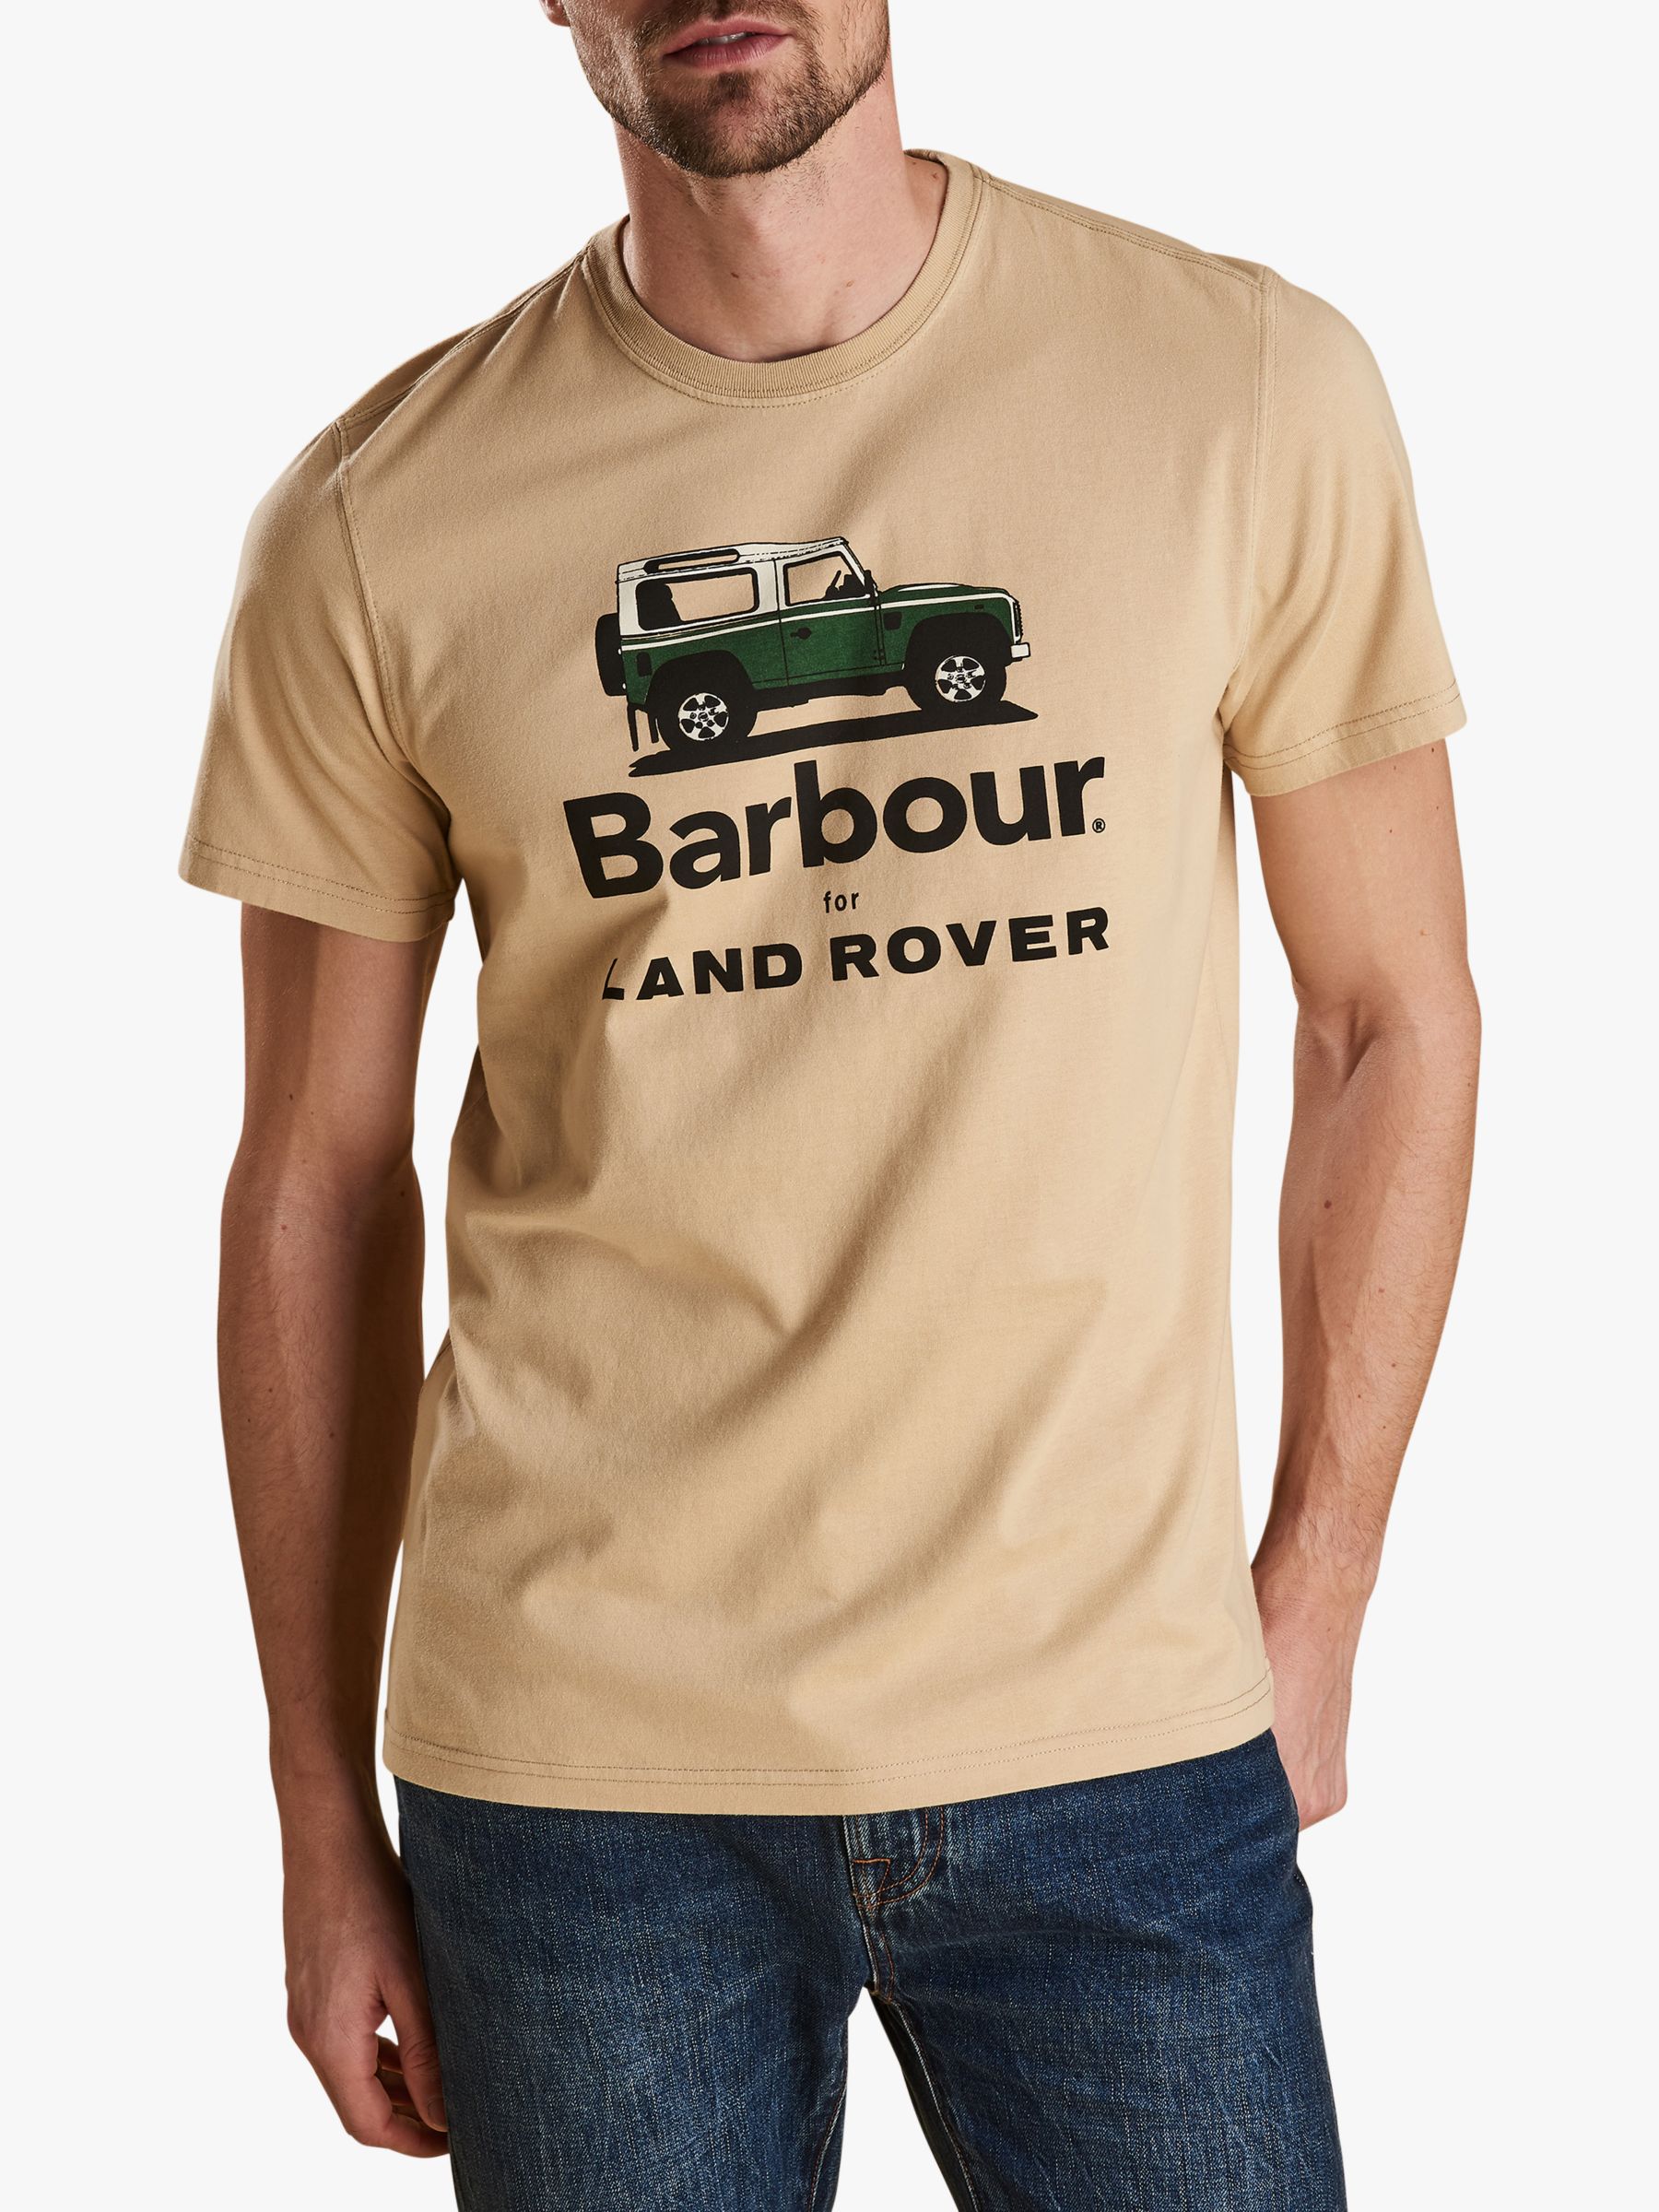 barbour defender t shirt